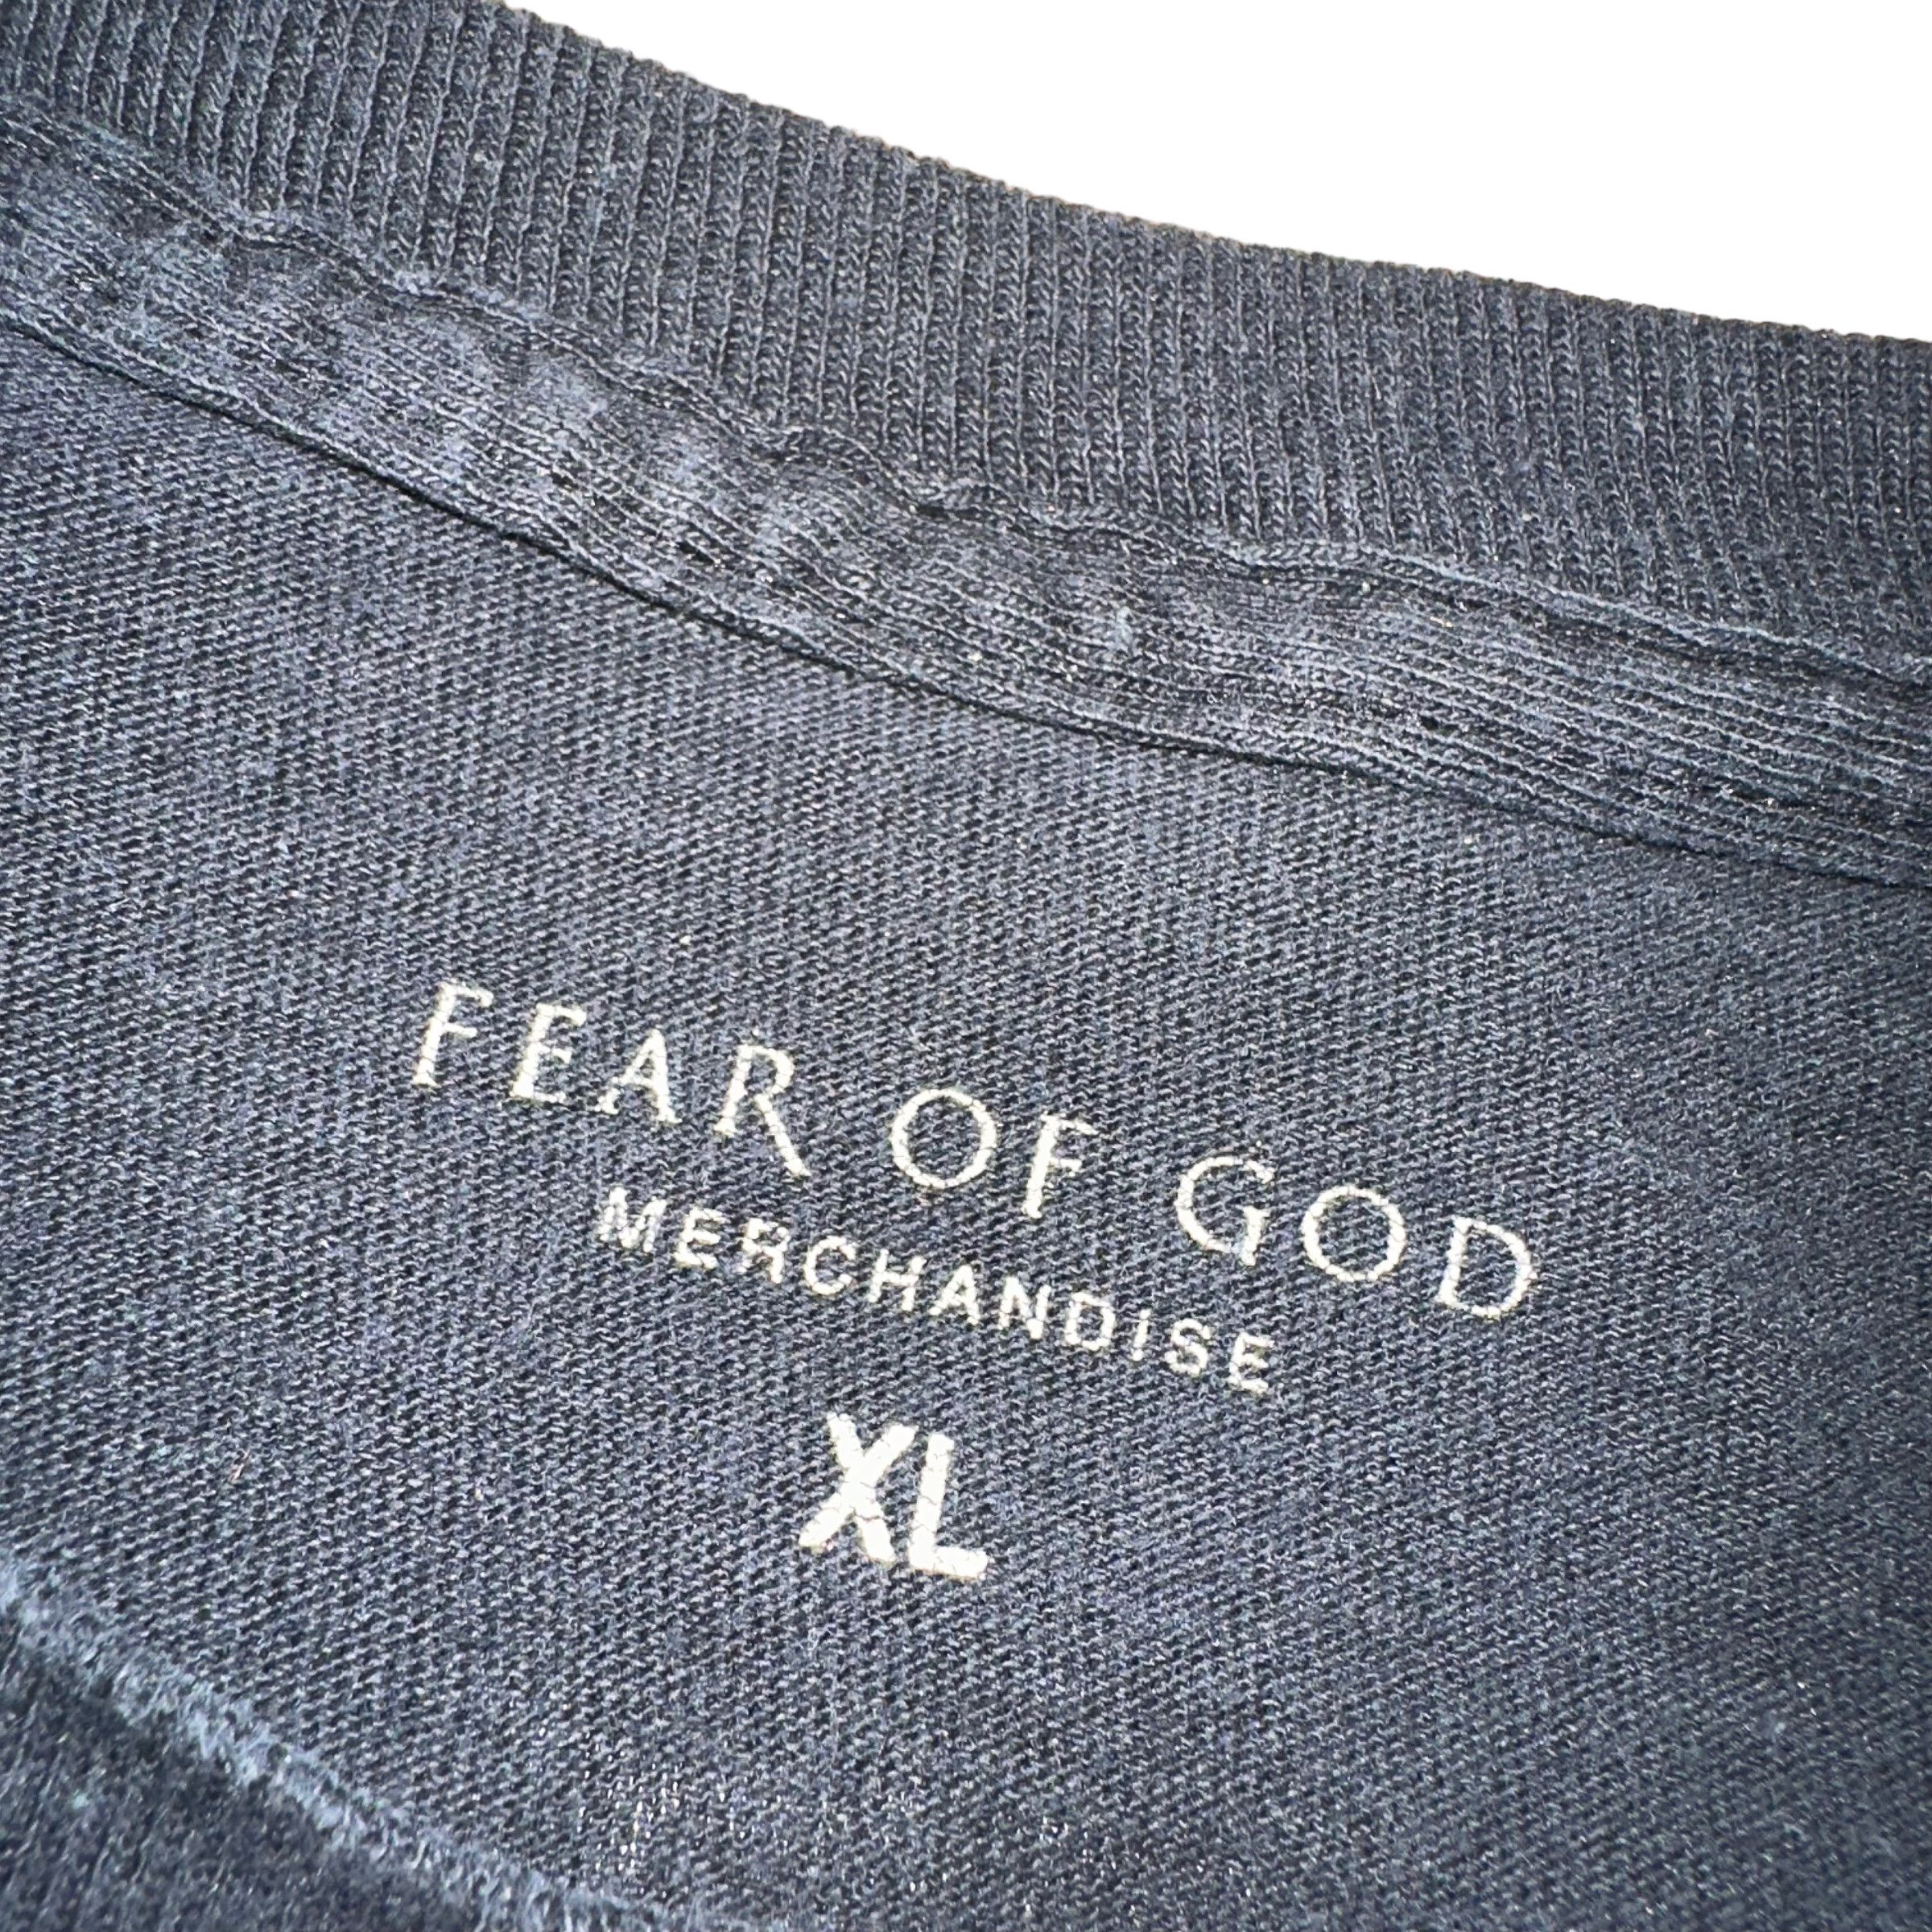 Fear of God Fear of God Jay-Z 444 Tour Long Sleeve T Shirt | Grailed